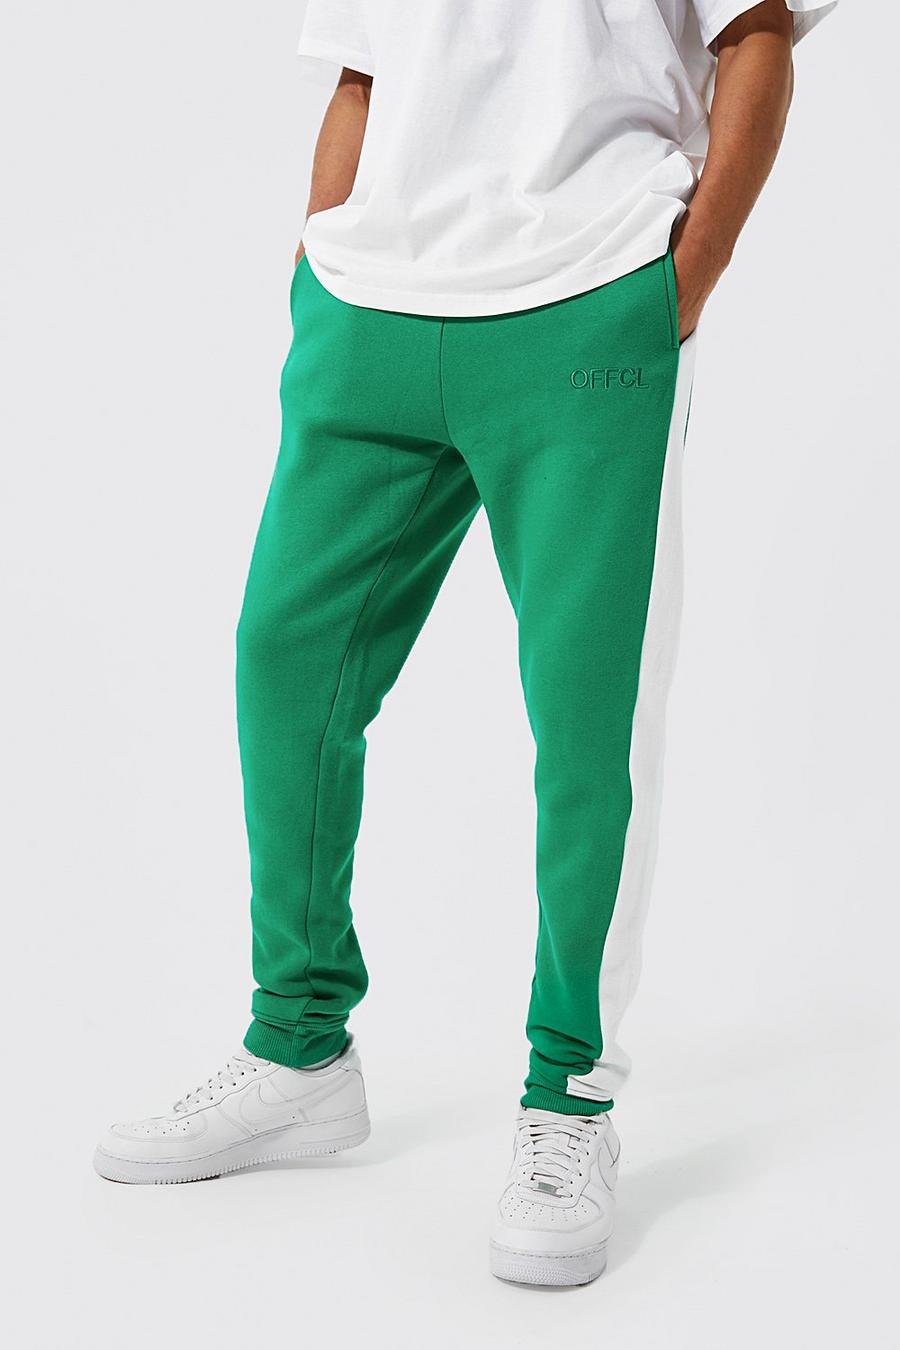 Pantalón deportivo Tall Offcl pitillo con panel lateral, Bright green verde